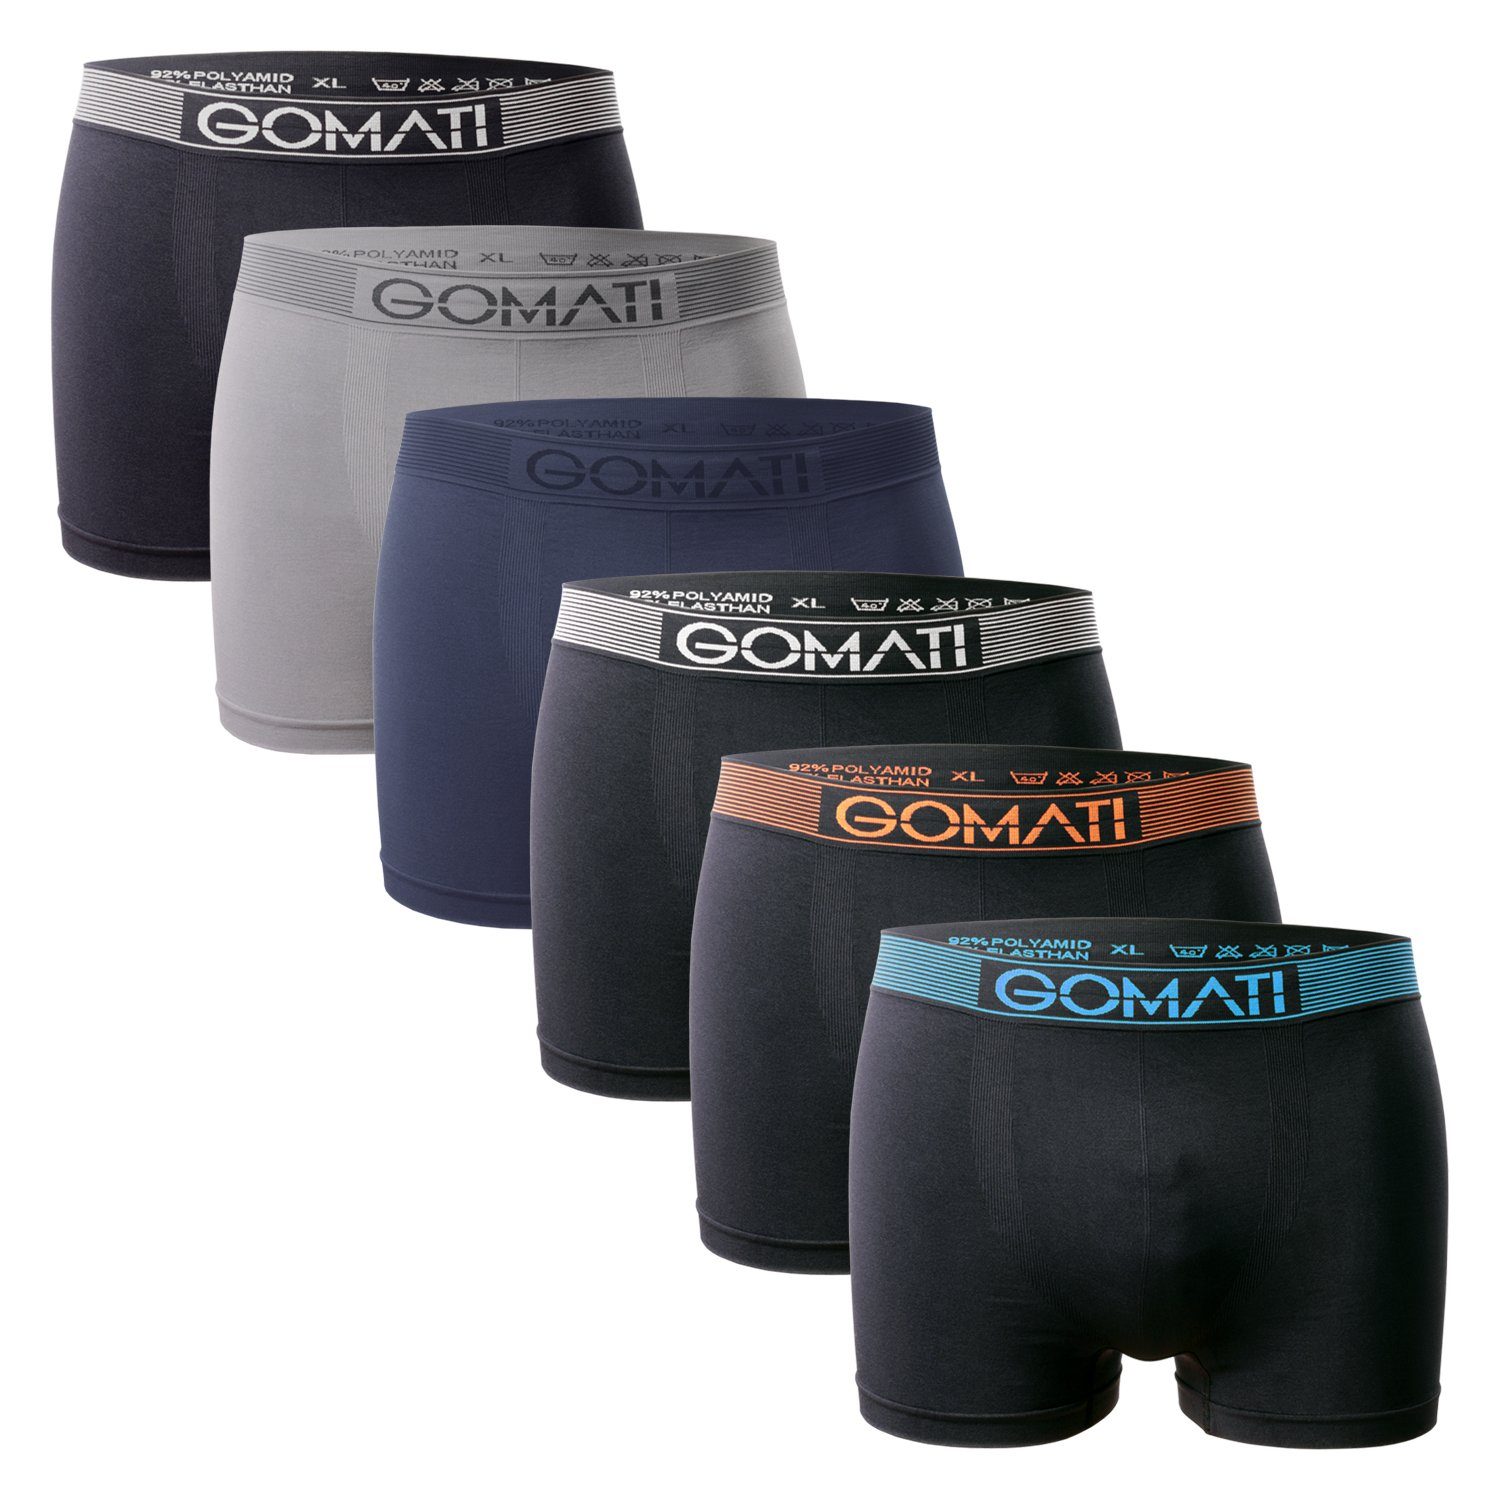 Gomati Boxershorts Grey Black (6er Seamless Pants / Boxershorts Microfaser-Elasthan Herren Pack)